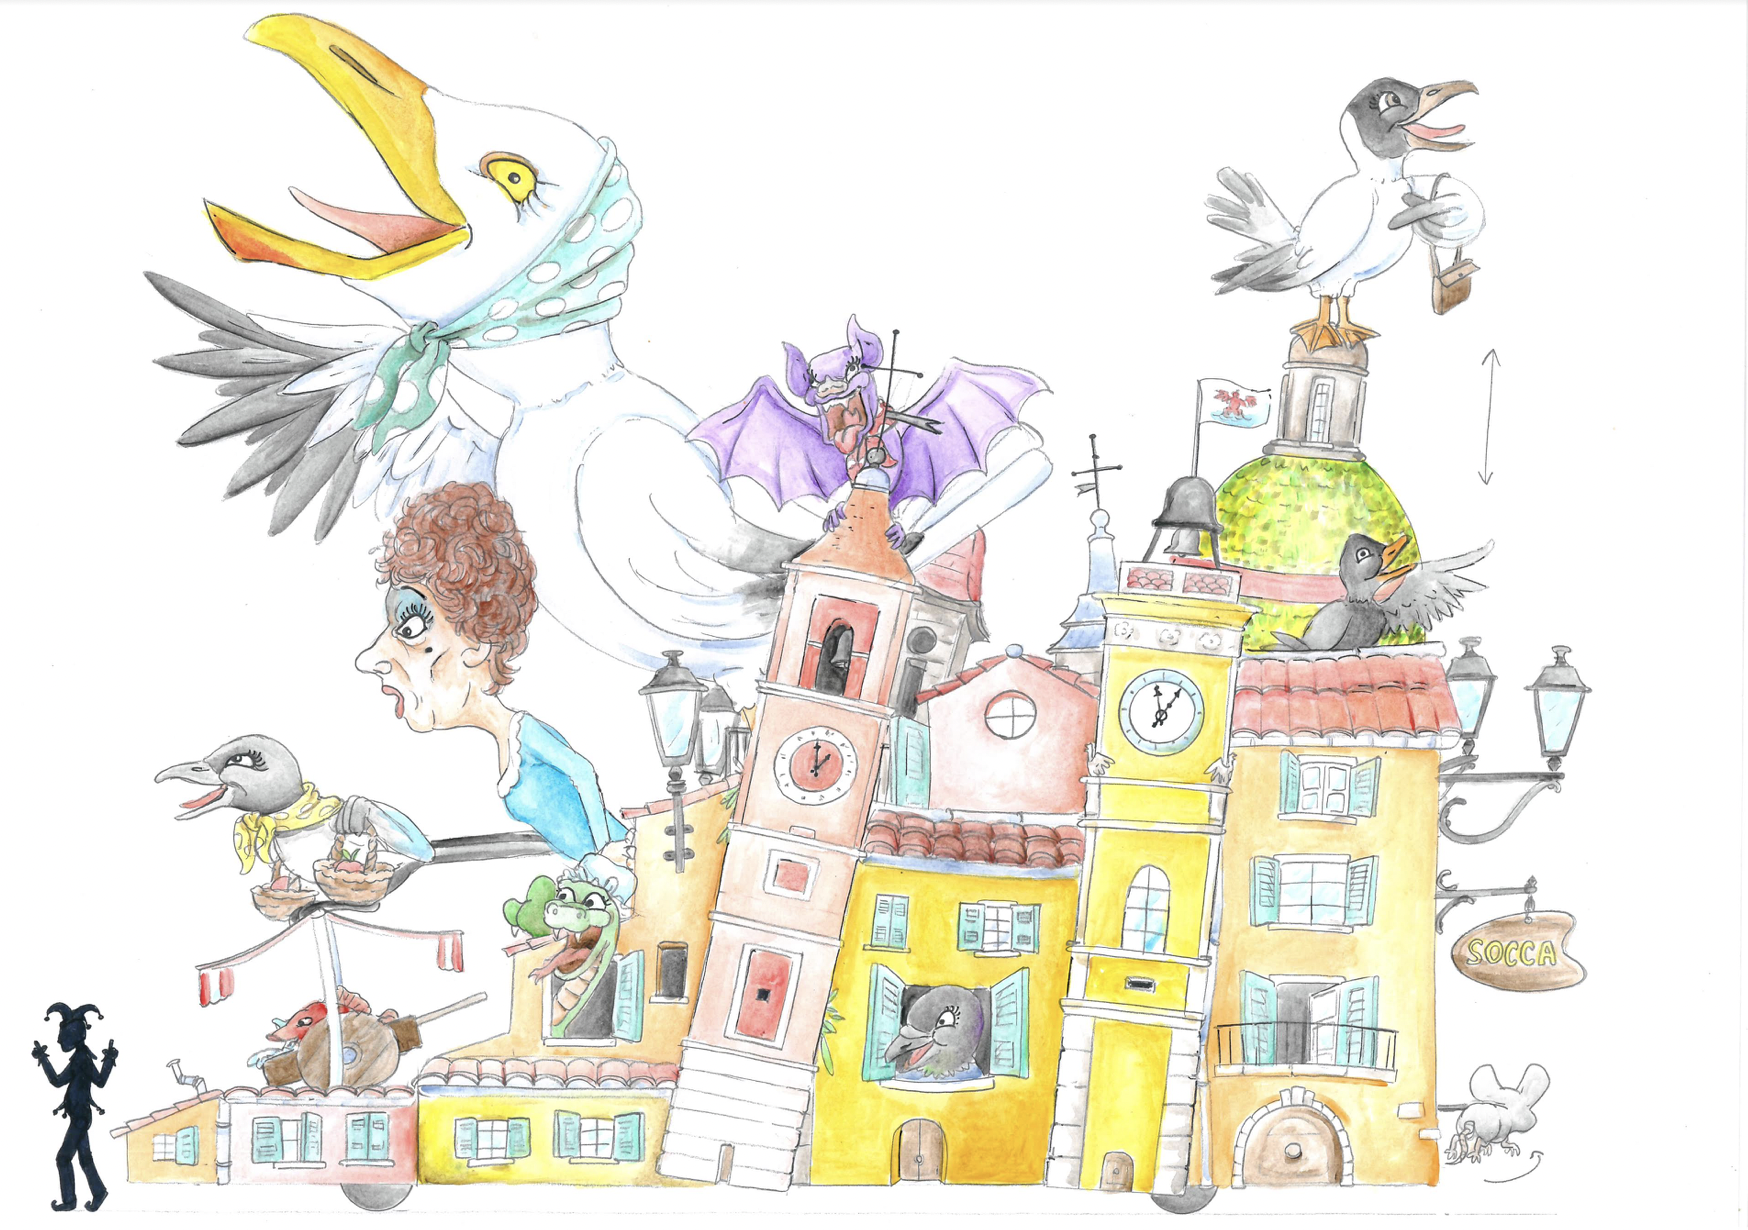 Le Carnaval des retrouvailles à Nice/ aufildeslieux.fr/Illustration de la Commère du Vieux Nice par Johan Garcia© Johan Garcia